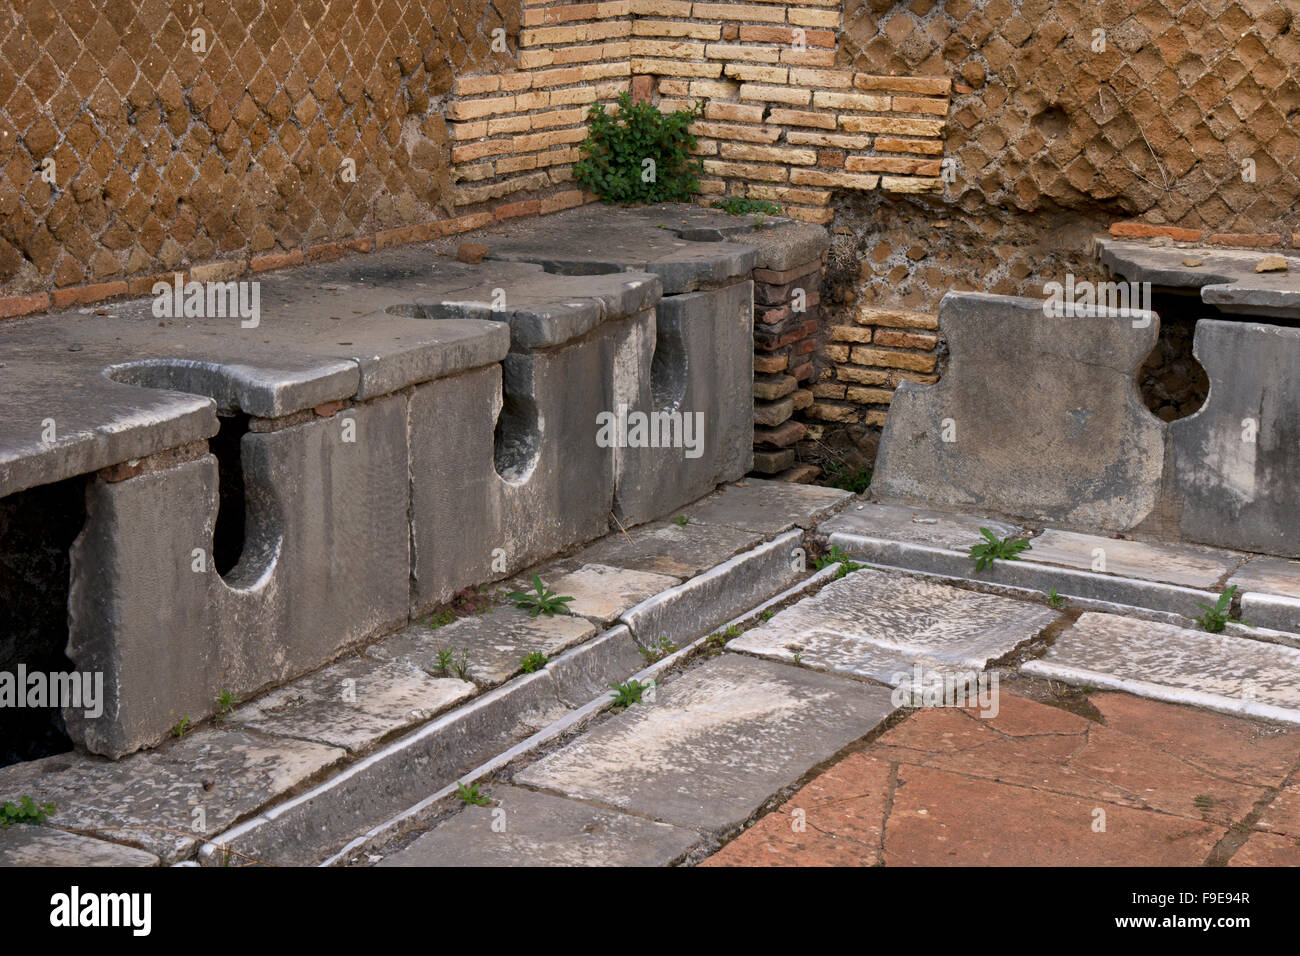 La Domus de latrines du Triclini dans l'ancien port romain d'Ostie, près de Rome, Italie, Europe Banque D'Images